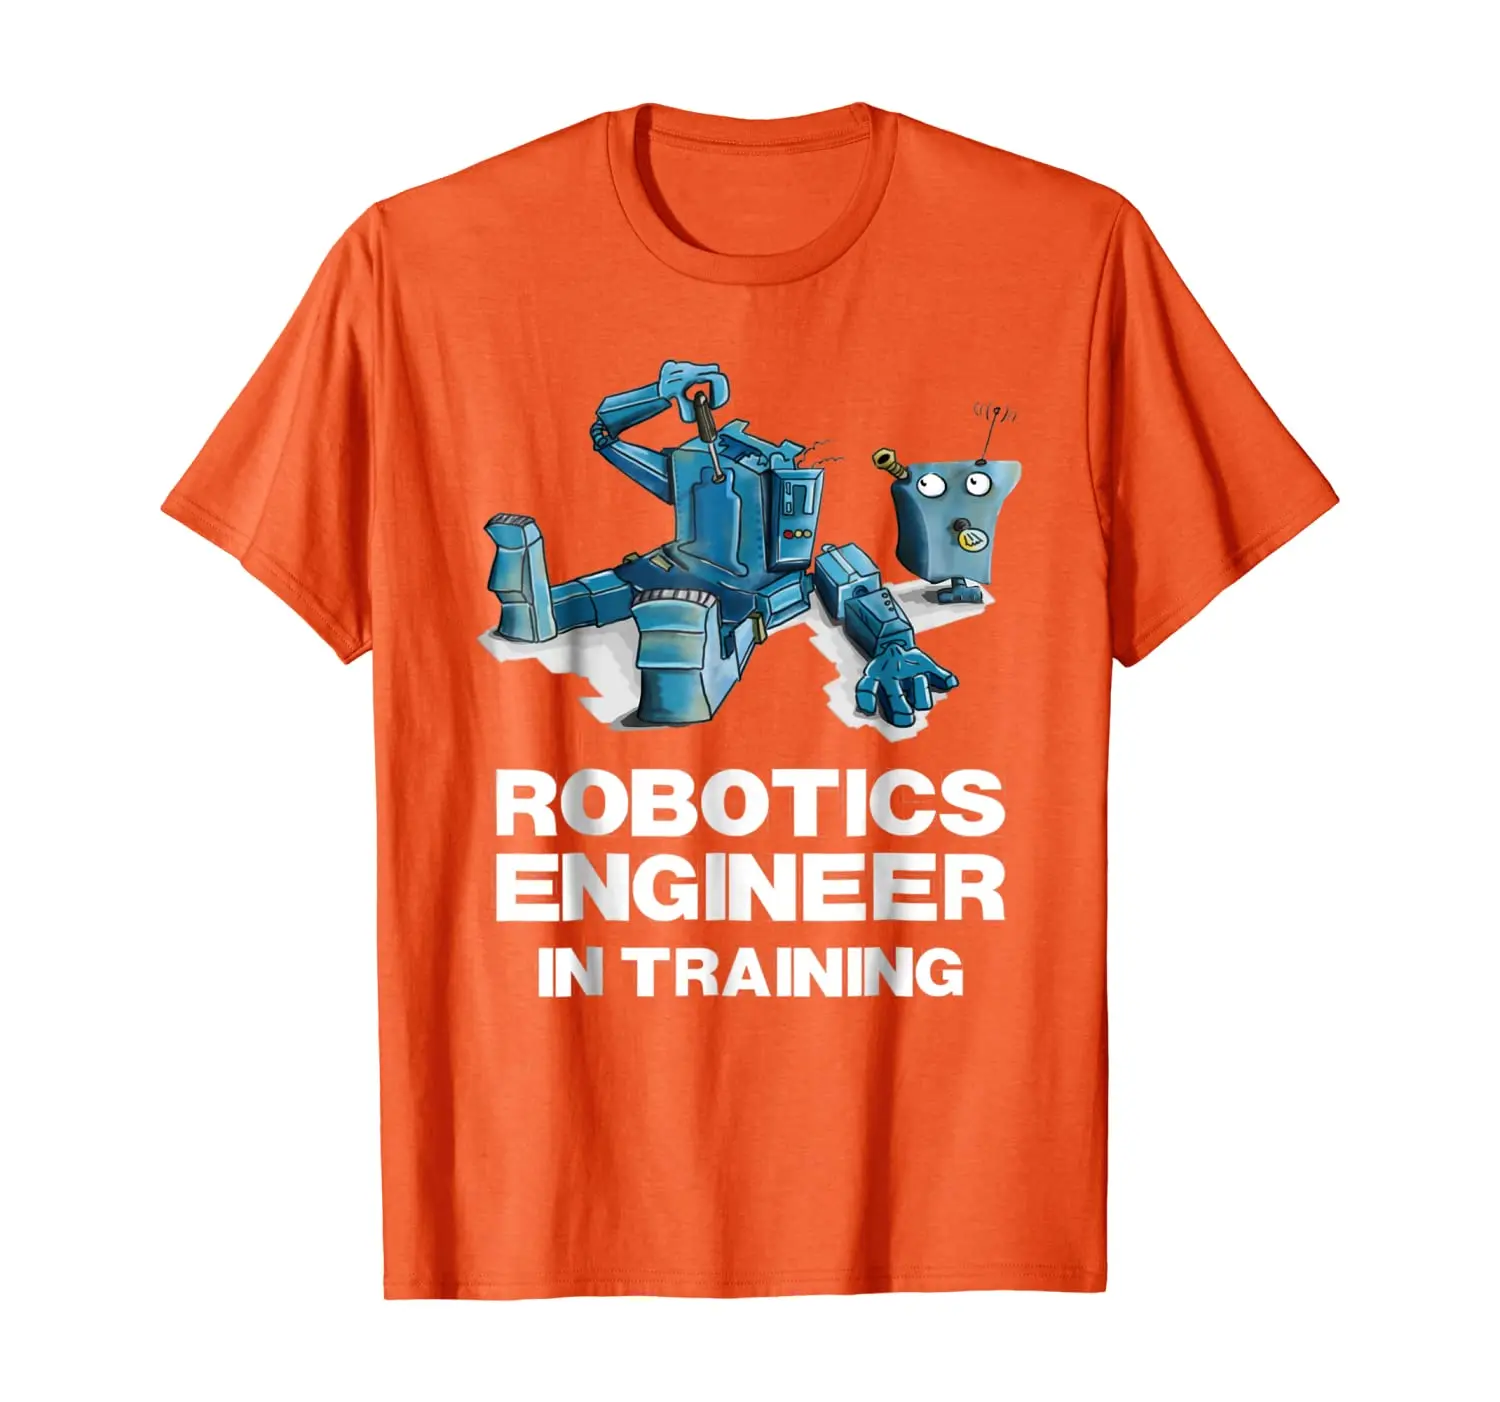 

Забавная футболка с роботом для детей Робототехника инженера в футболка для тренировок